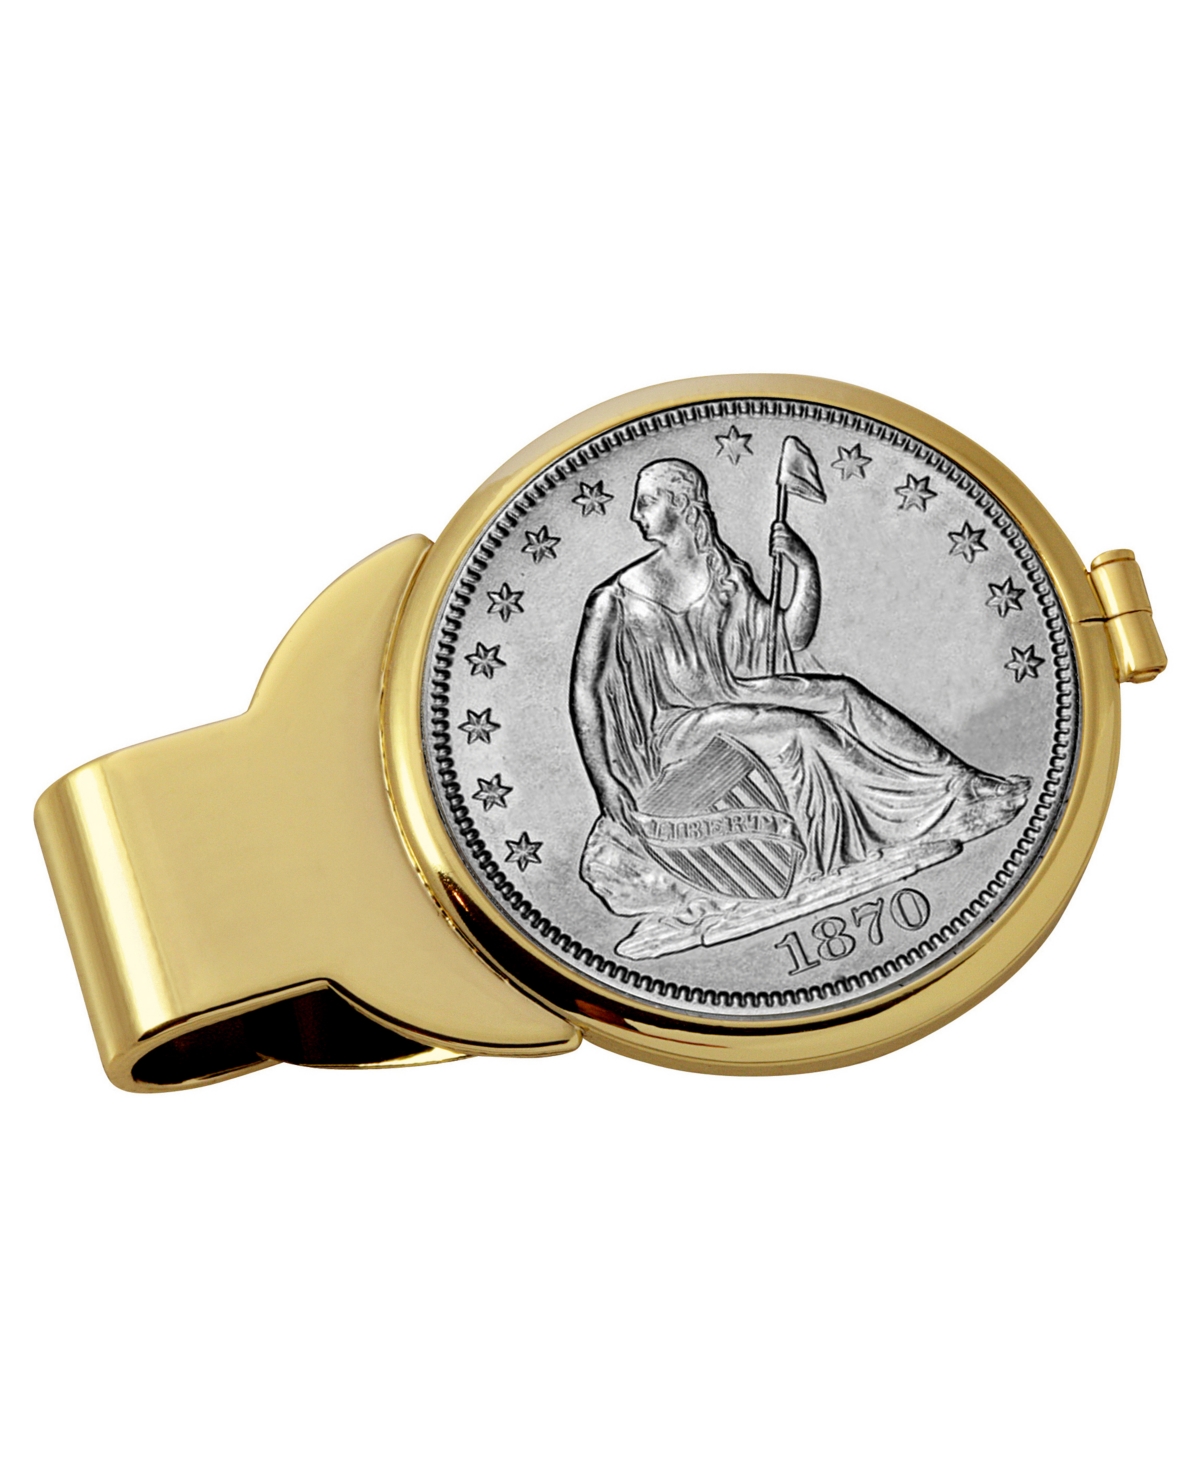 Men's American Coin Treasures Silver Seated Liberty Half Dollar Coin Money Clip - Gold